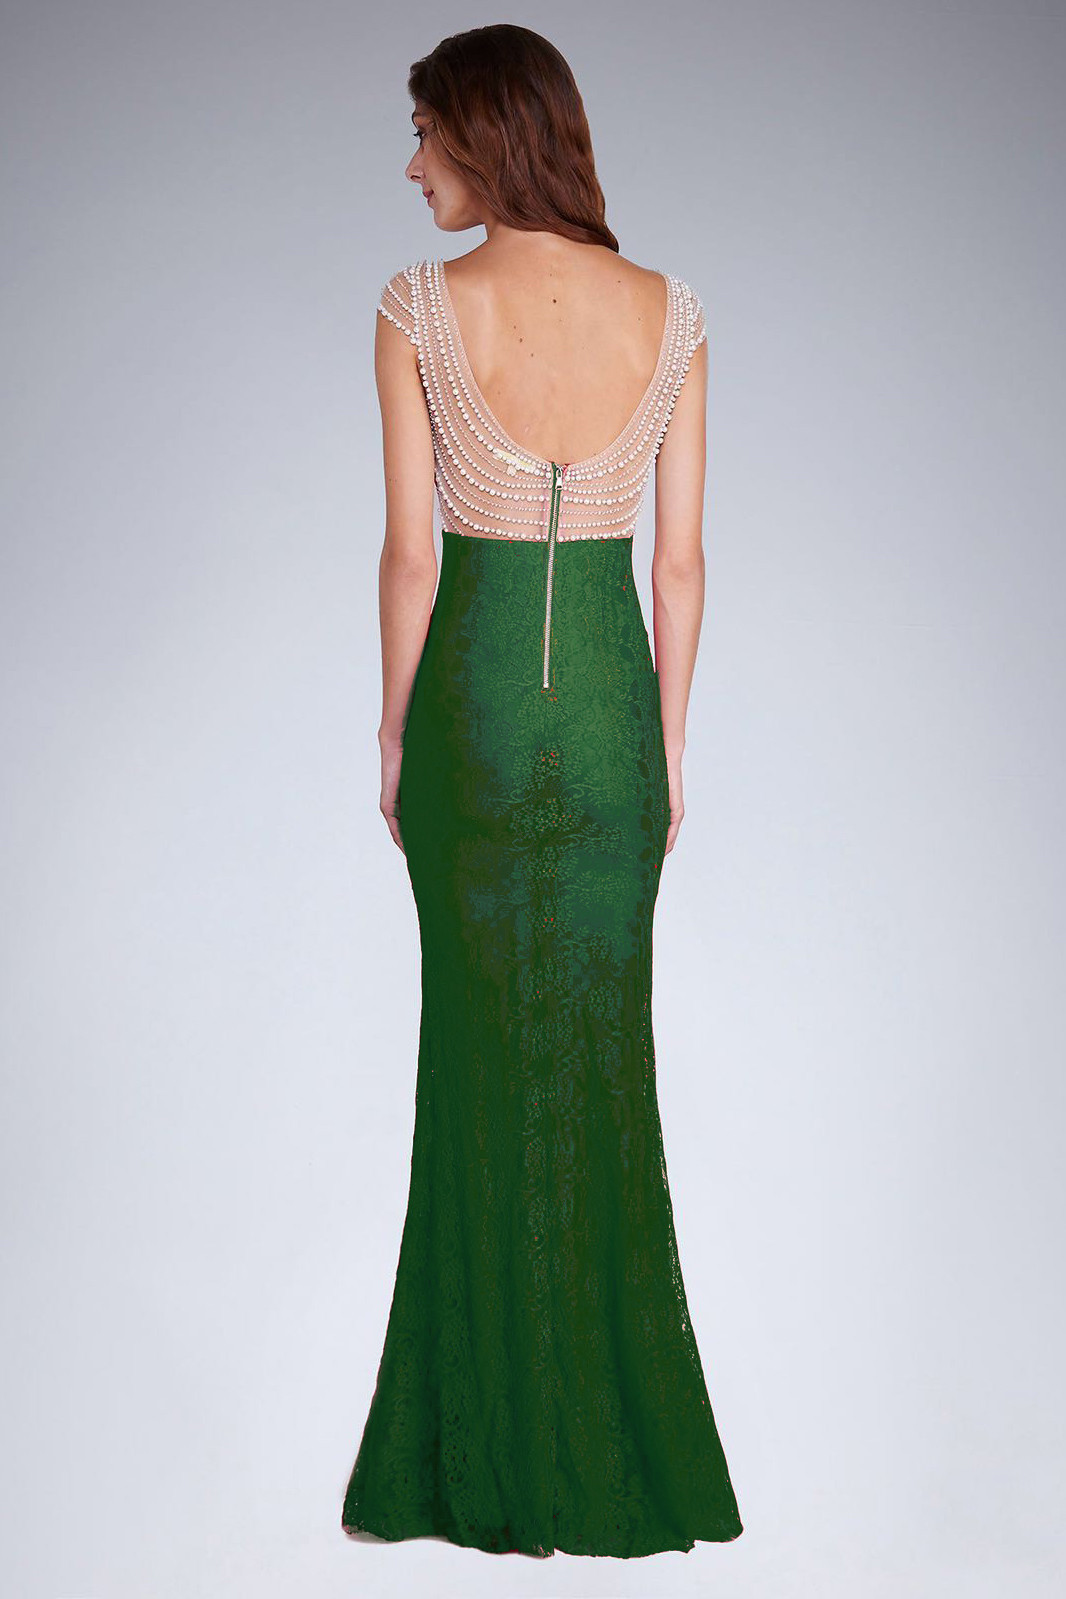 Dámské společenské šaty s a krajkou dlouhé zelené Zelená & zelená M model 15042517 - SOKY&#38;SOKA